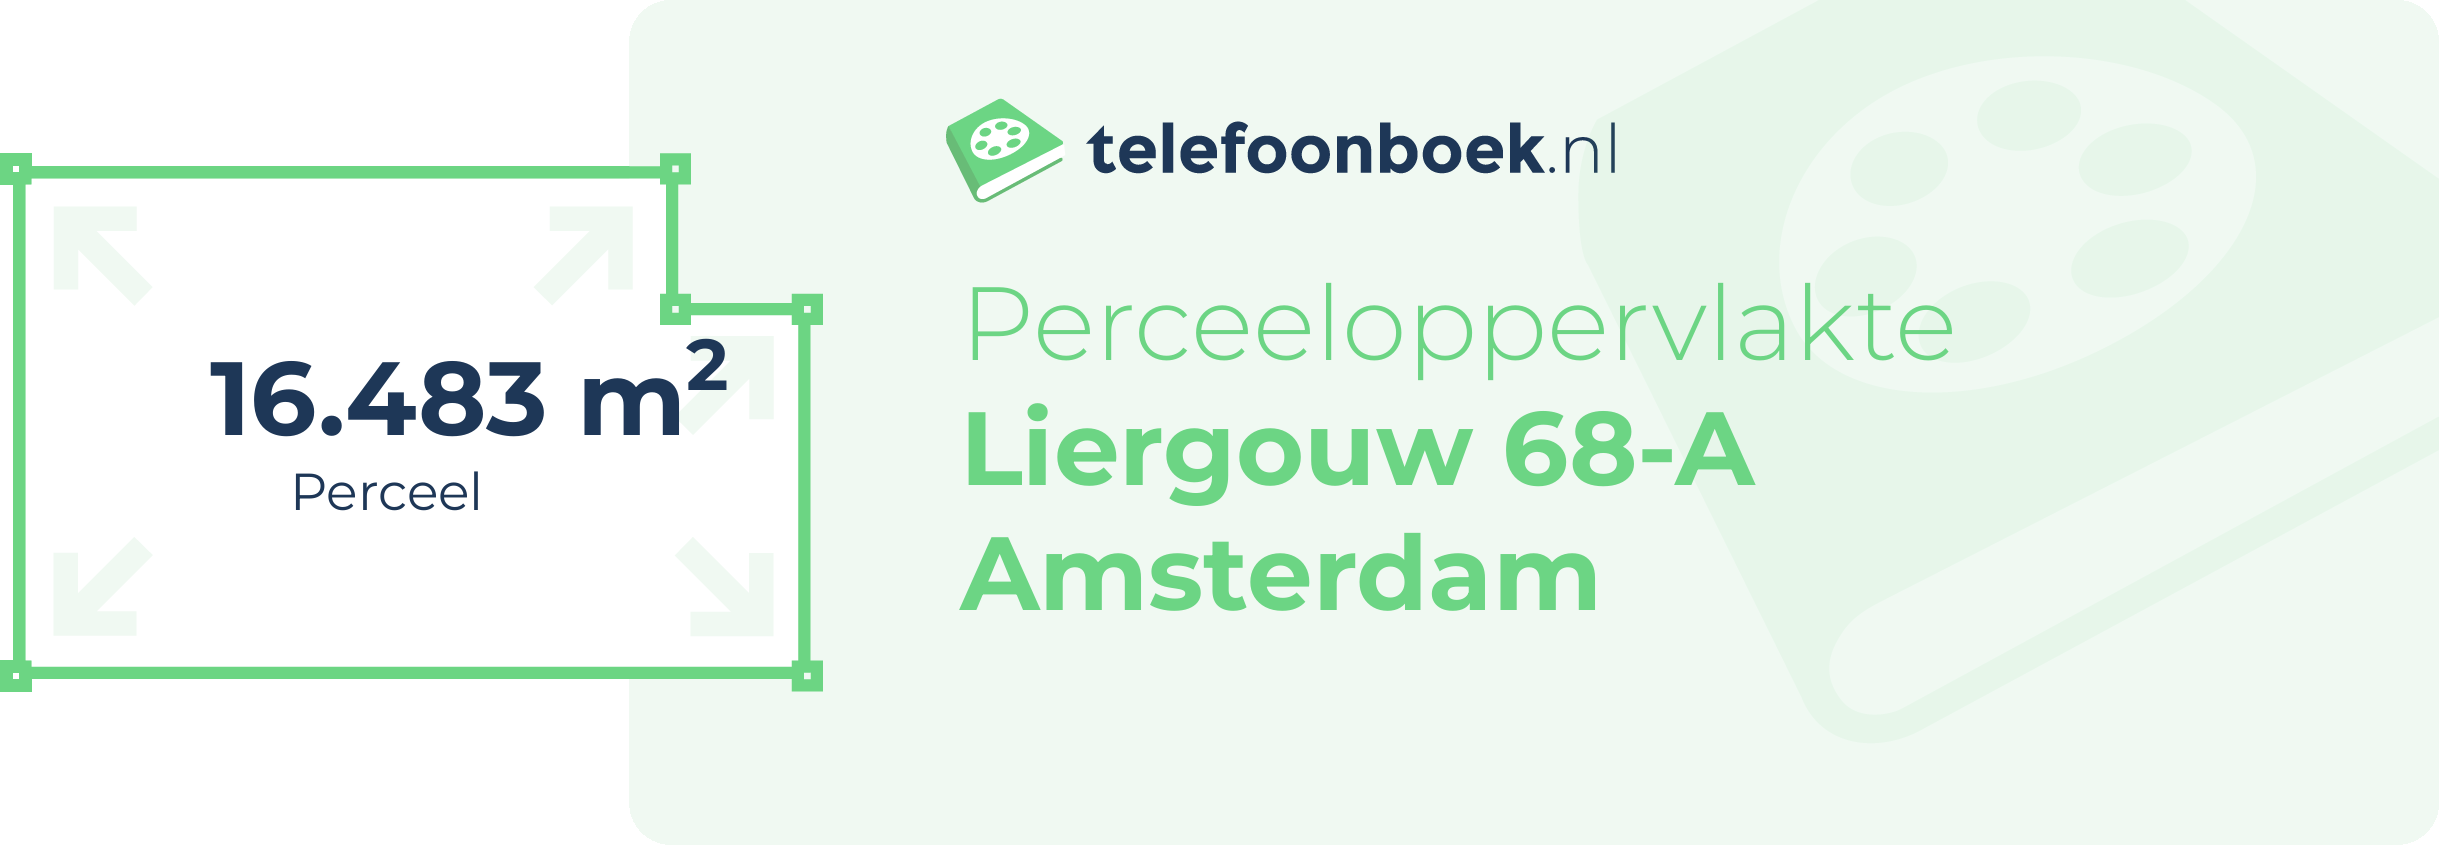 Perceeloppervlakte Liergouw 68-A Amsterdam